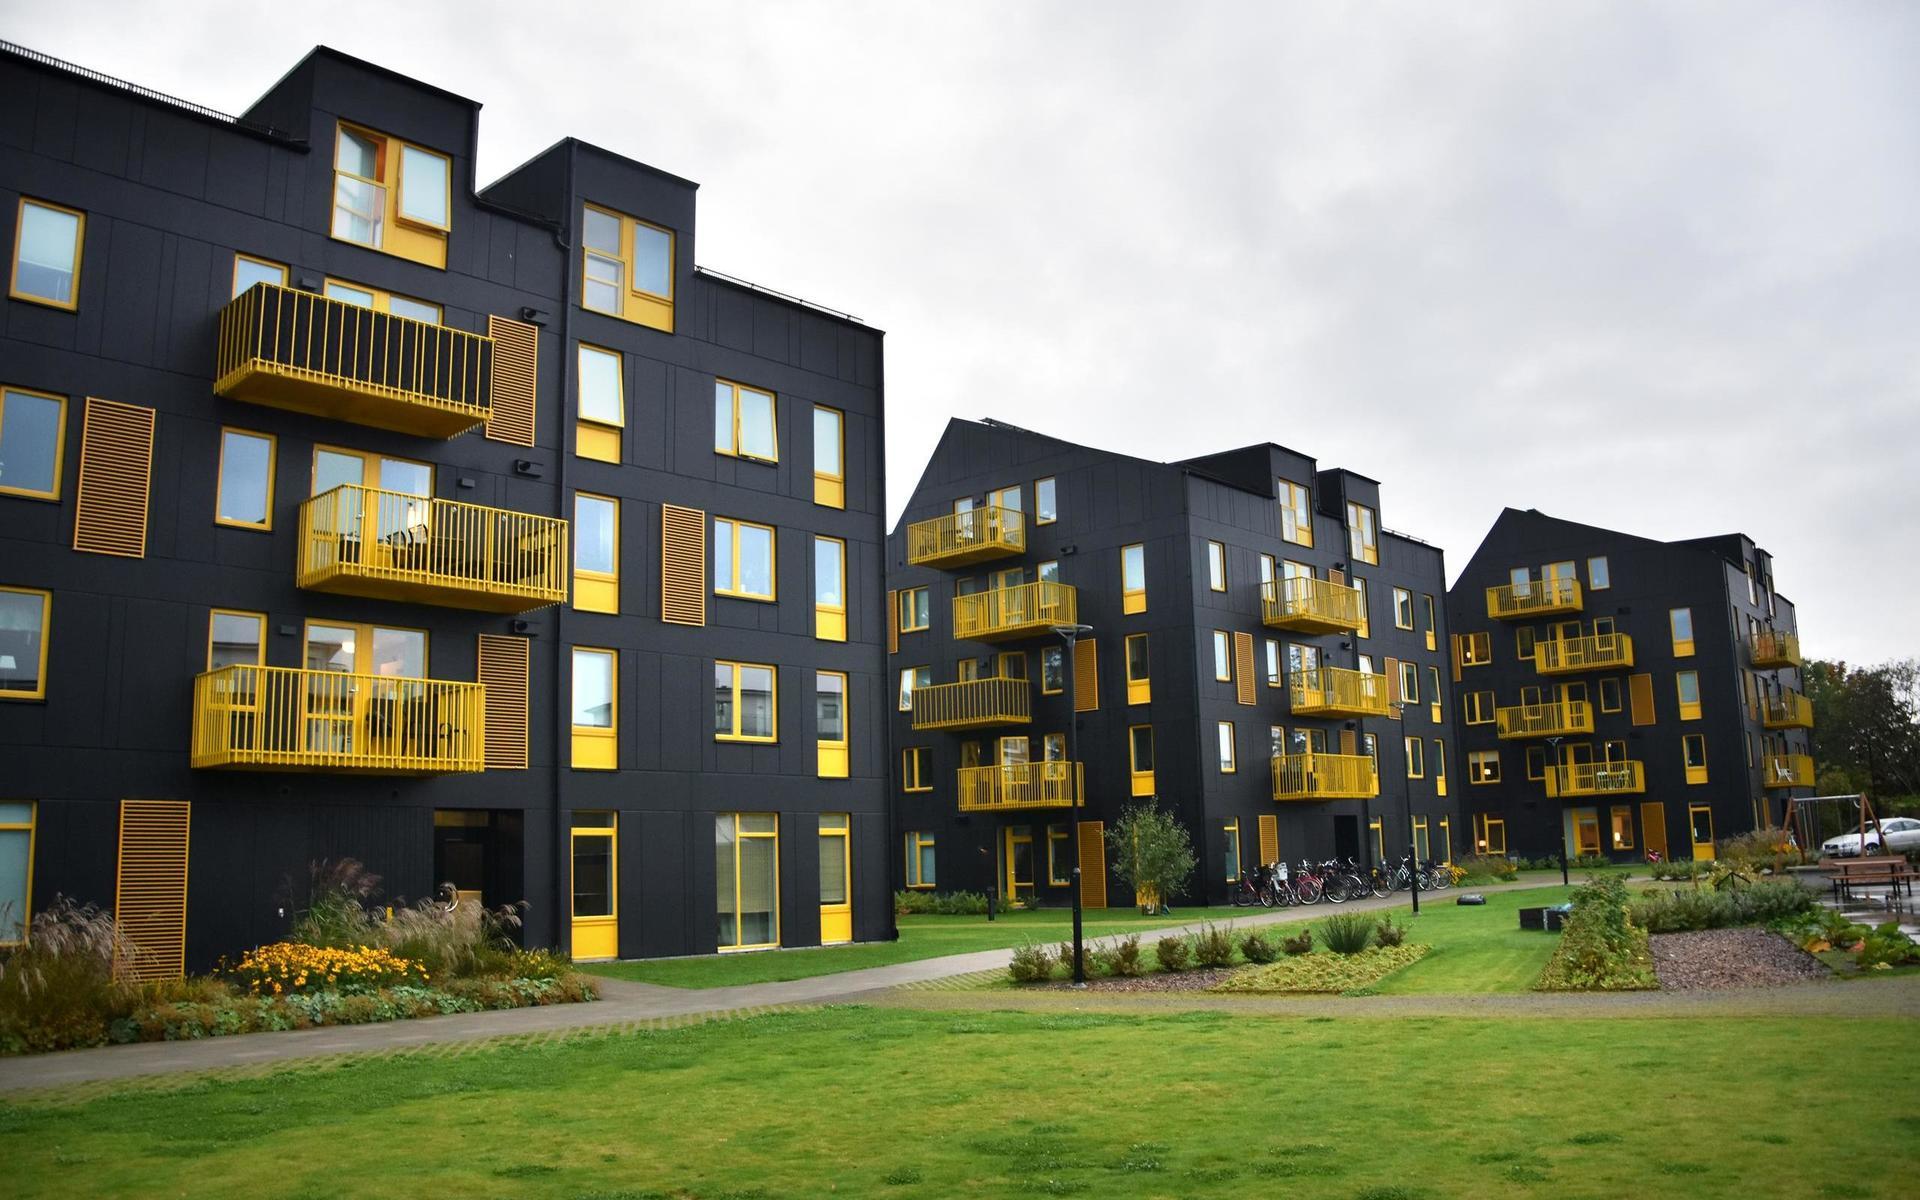 2018. Mandarinen på Träslövsvägen innehåller 63 hyreslägenheter. De svarta husen med gula detaljer byggdes av Wästbygg, Maleryd Fastigheter, Arkitema Architects och Dacapo AB, efter en kommunal markanvisningstävling.